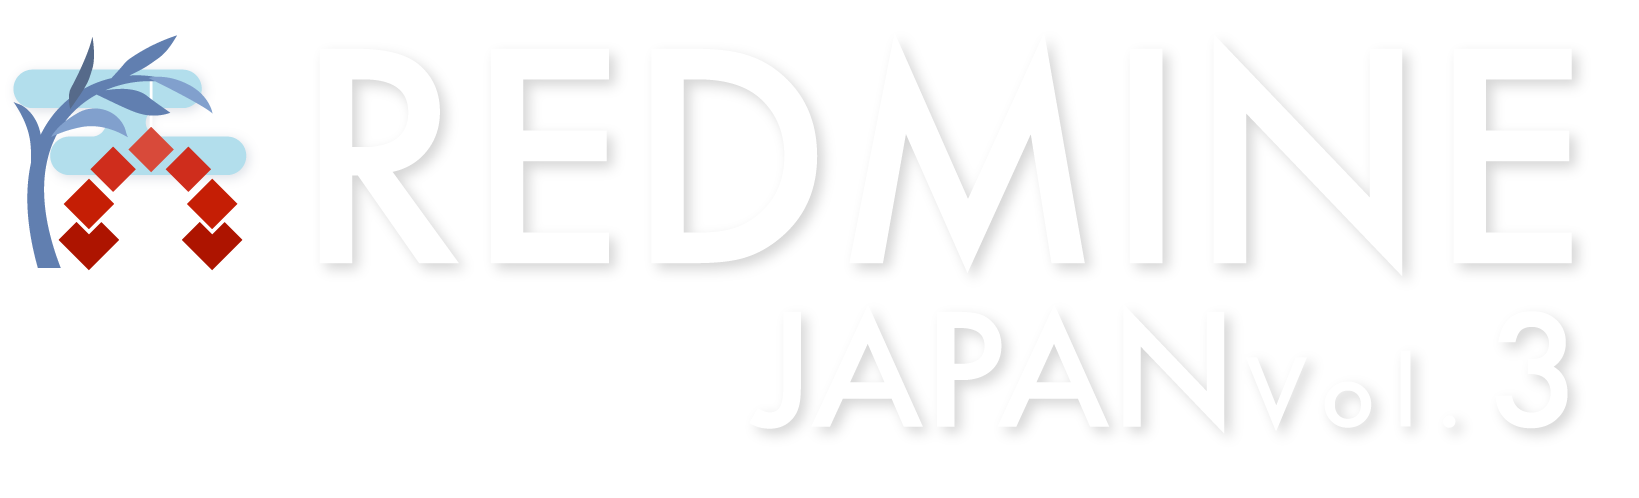 Redmine Japan Vol.2